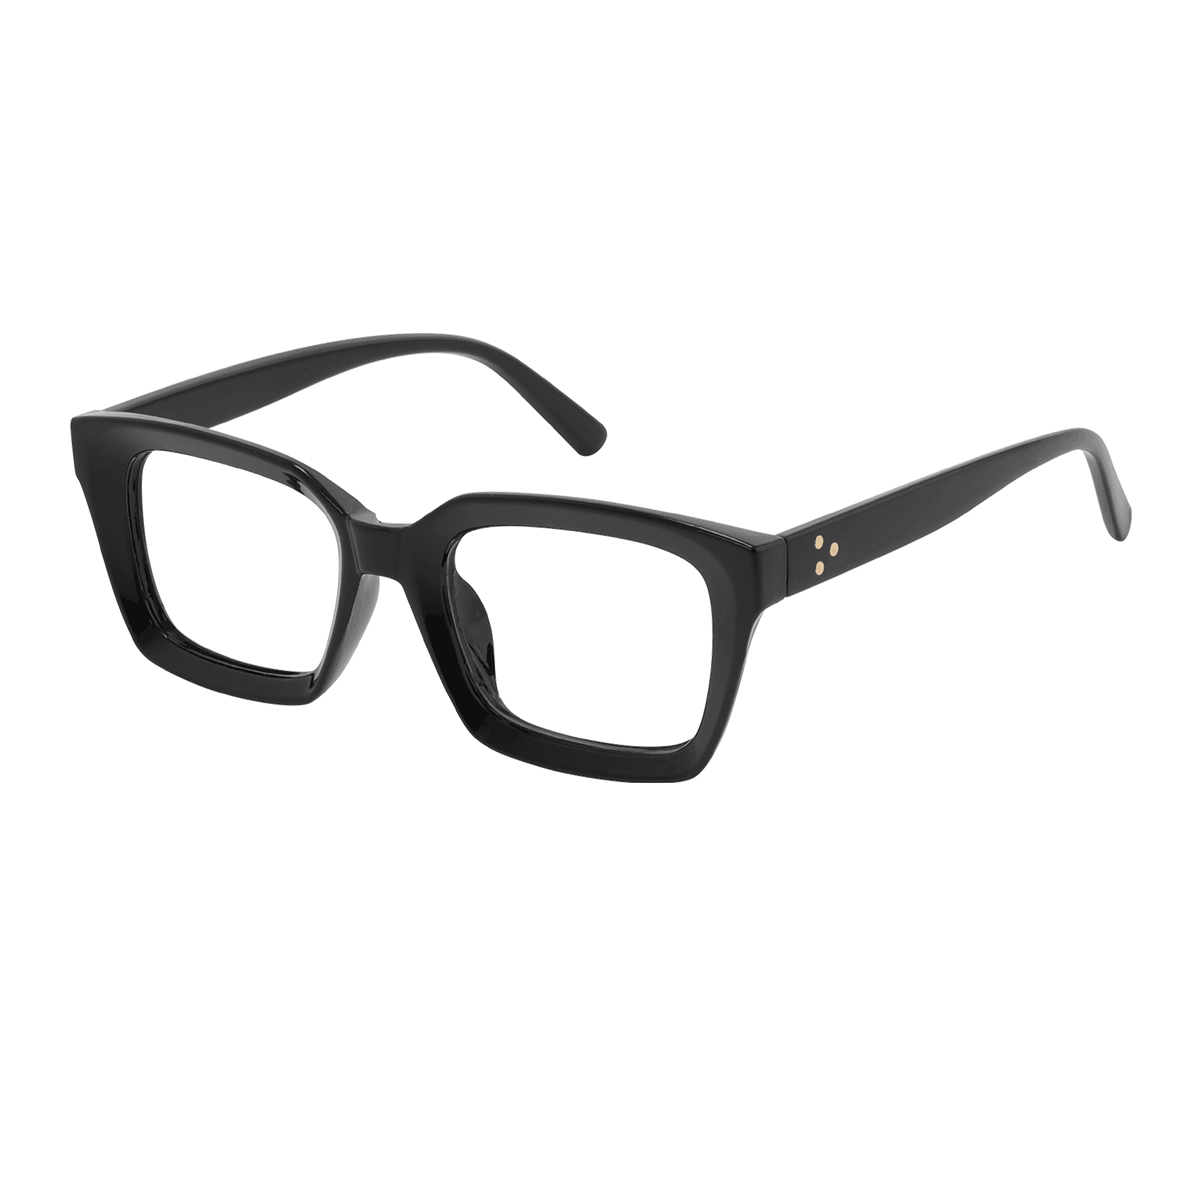 Crouch - Square Black Reading Glasses for Men & Women